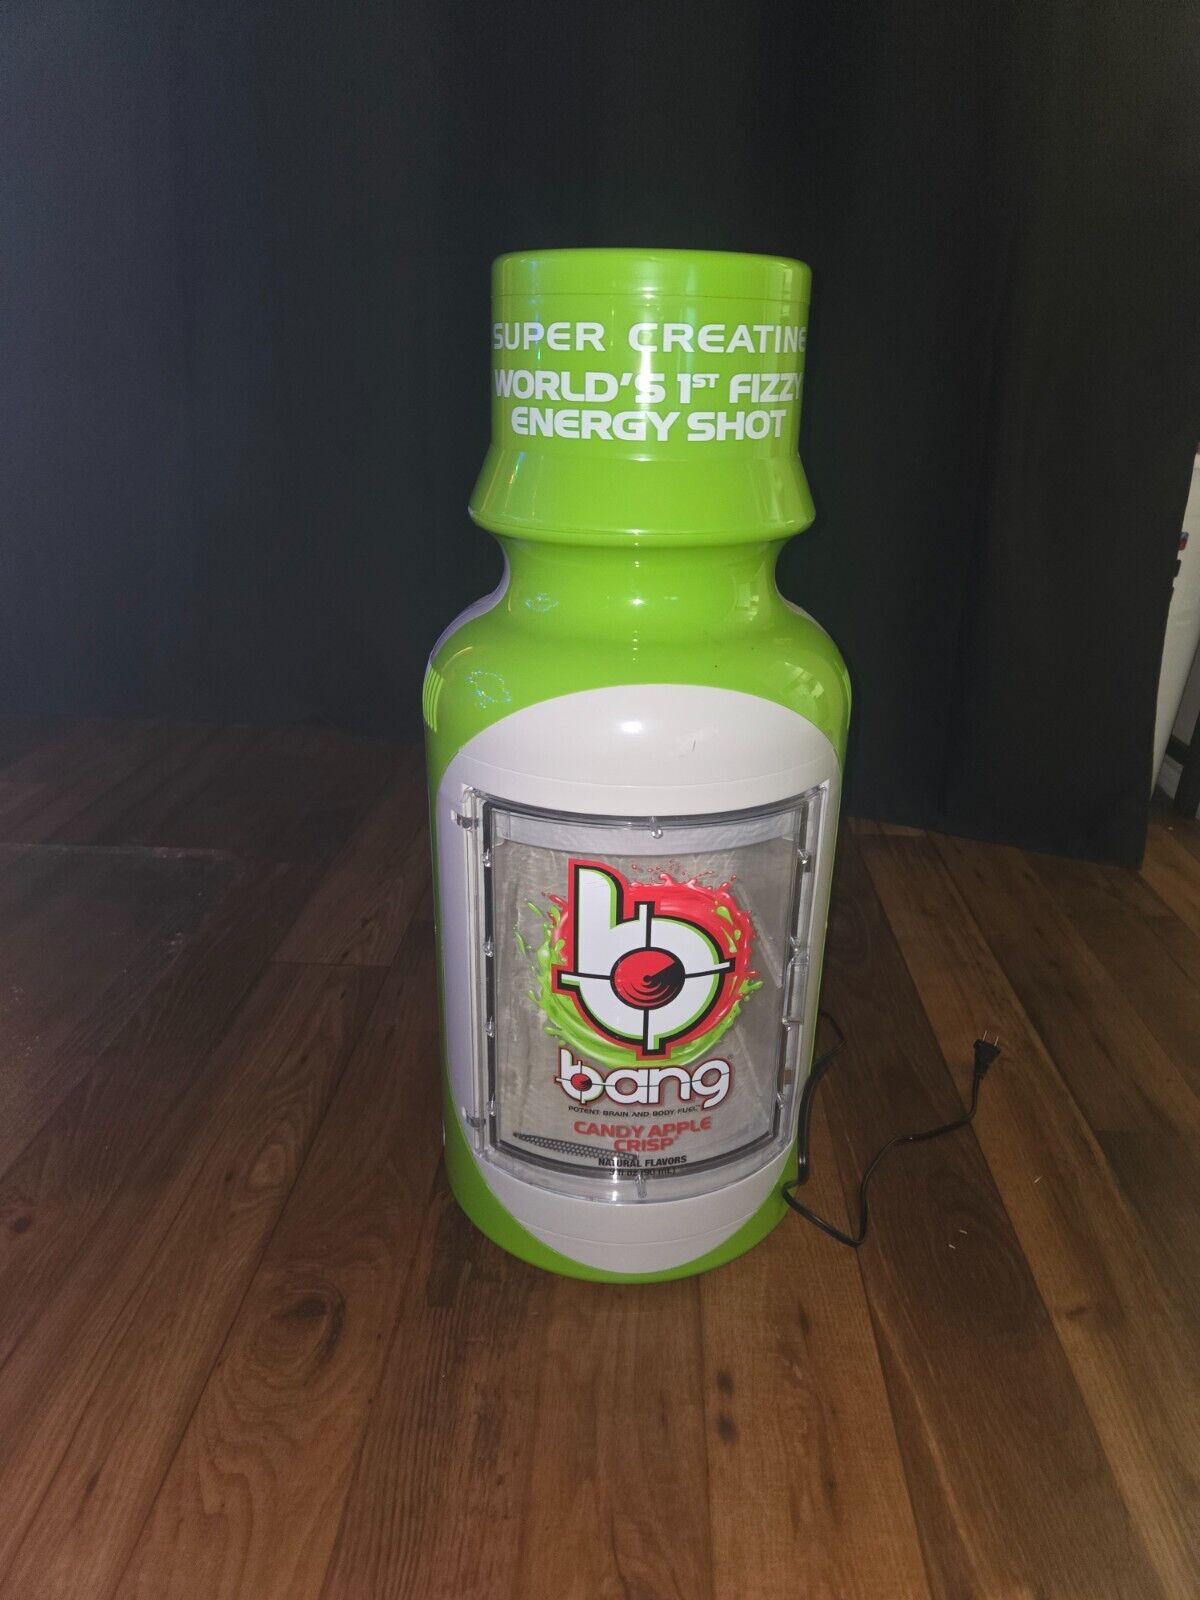 Bang energy drinks shot cooler color green mini cooler 